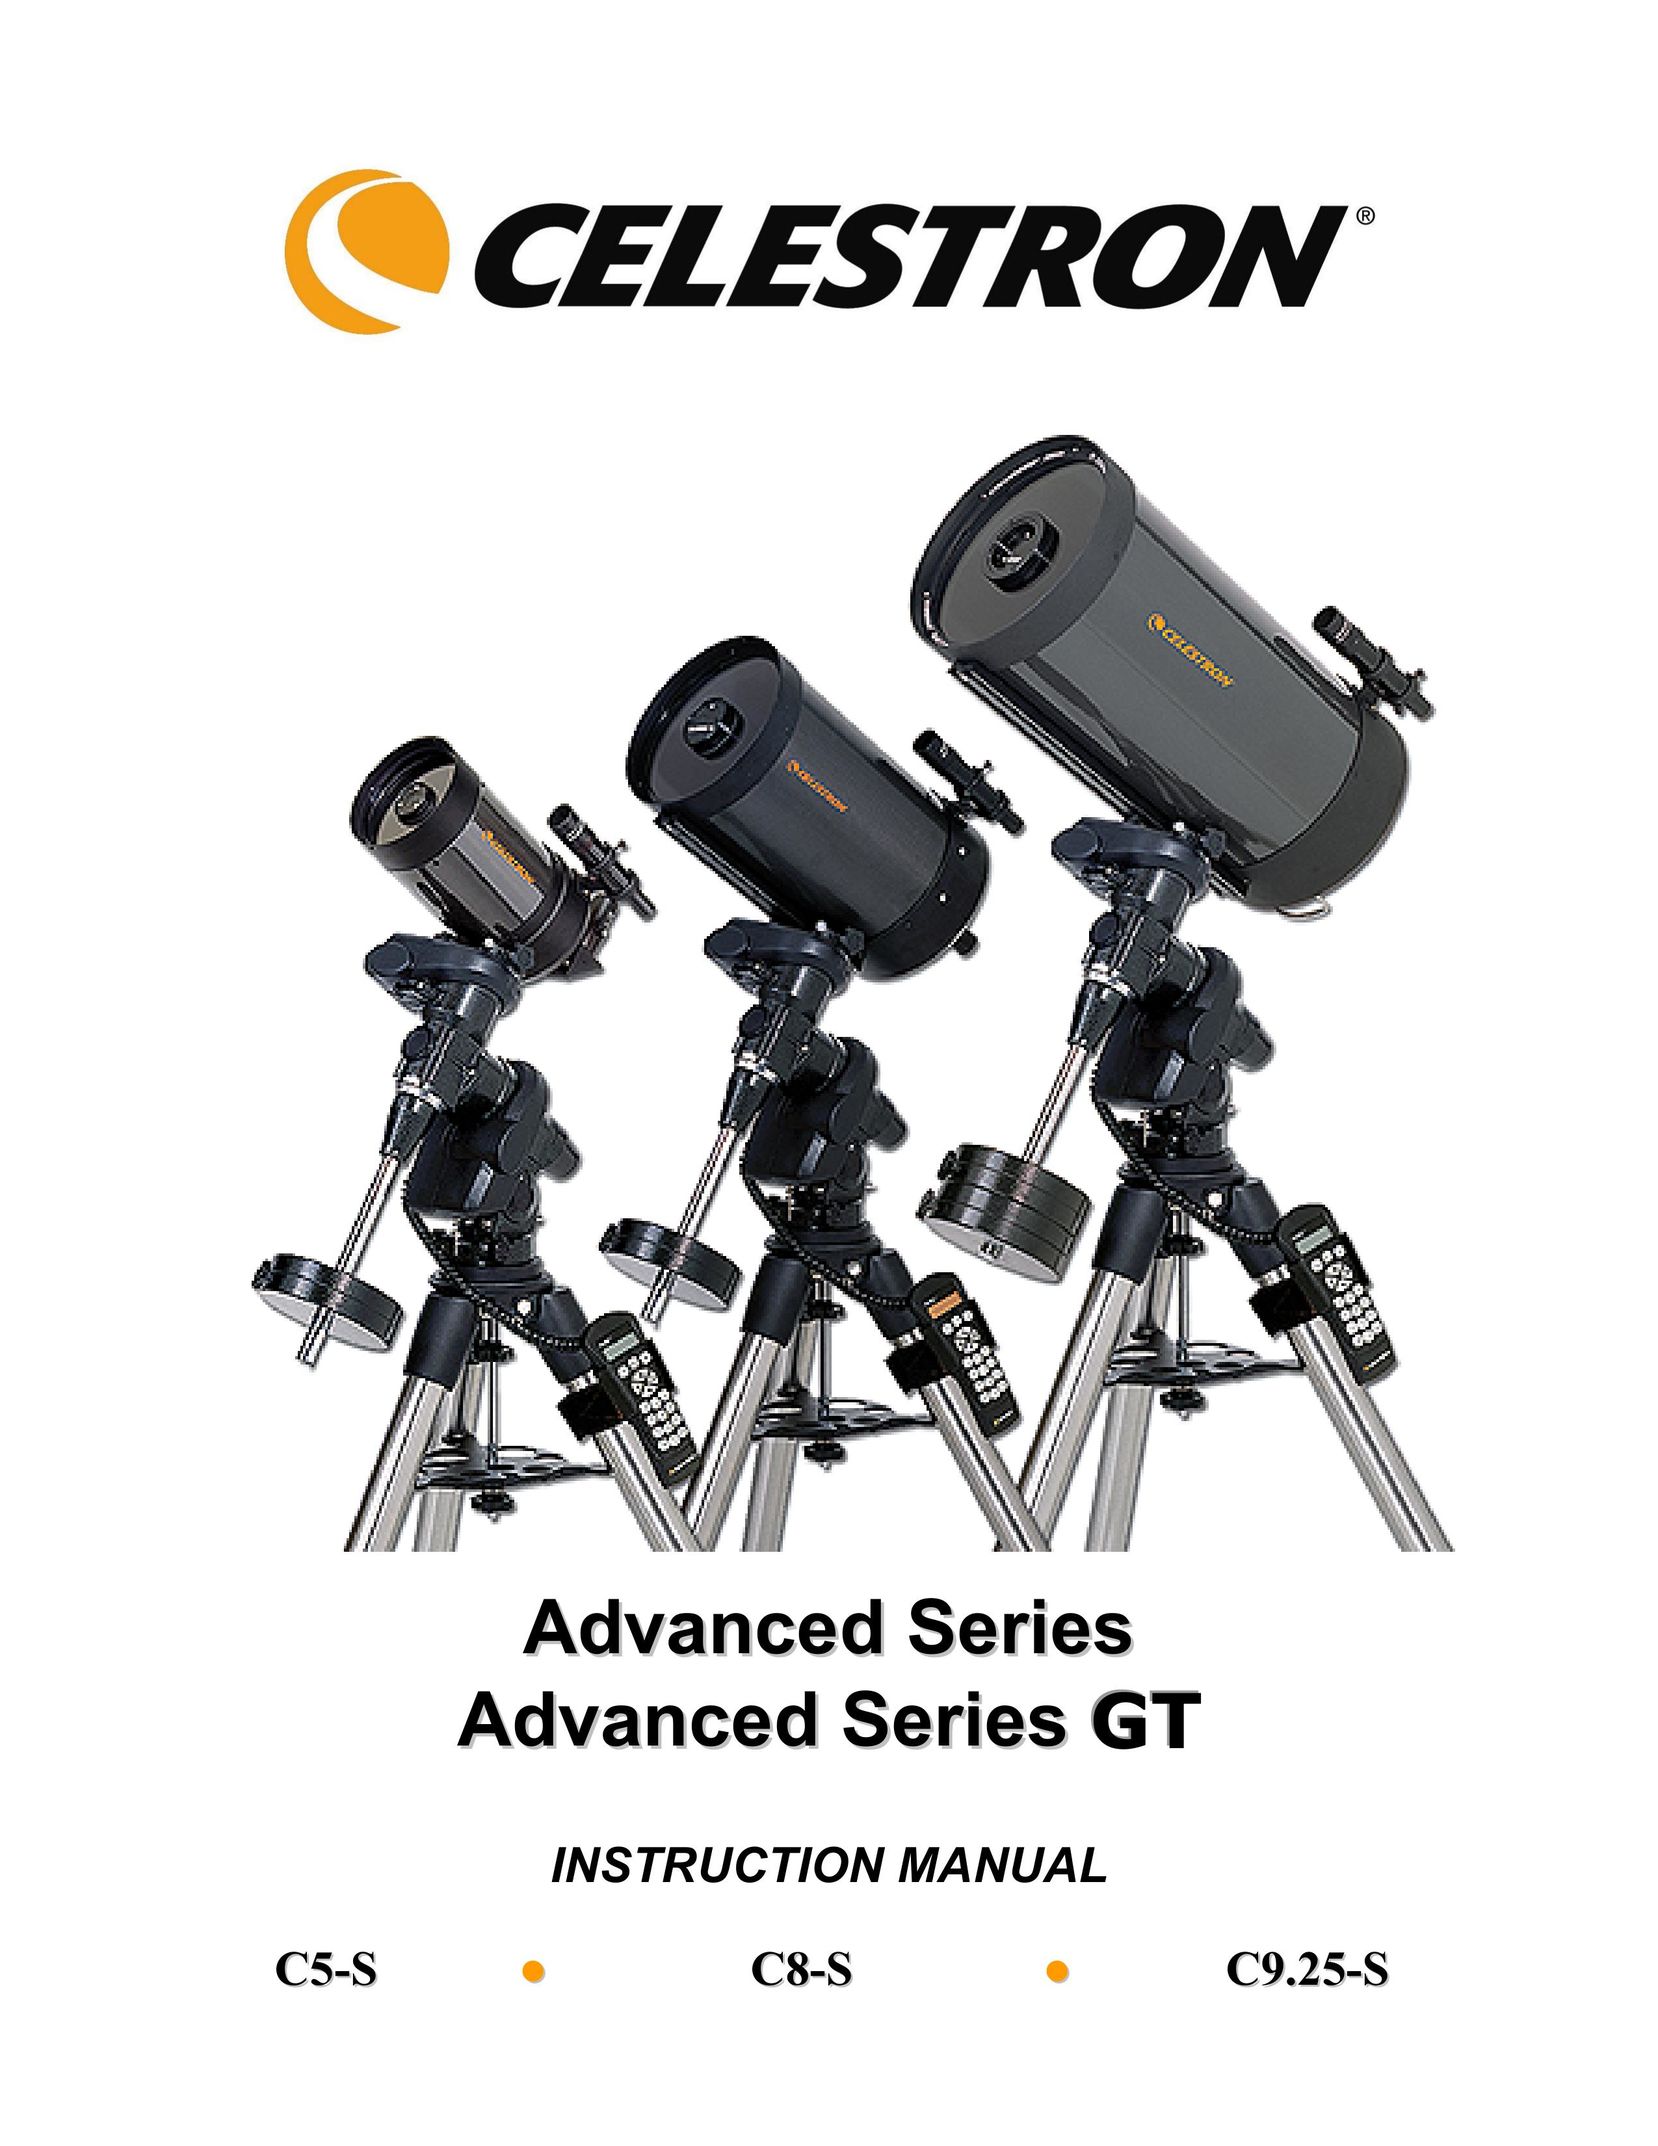 Celestron C8-S Binoculars User Manual